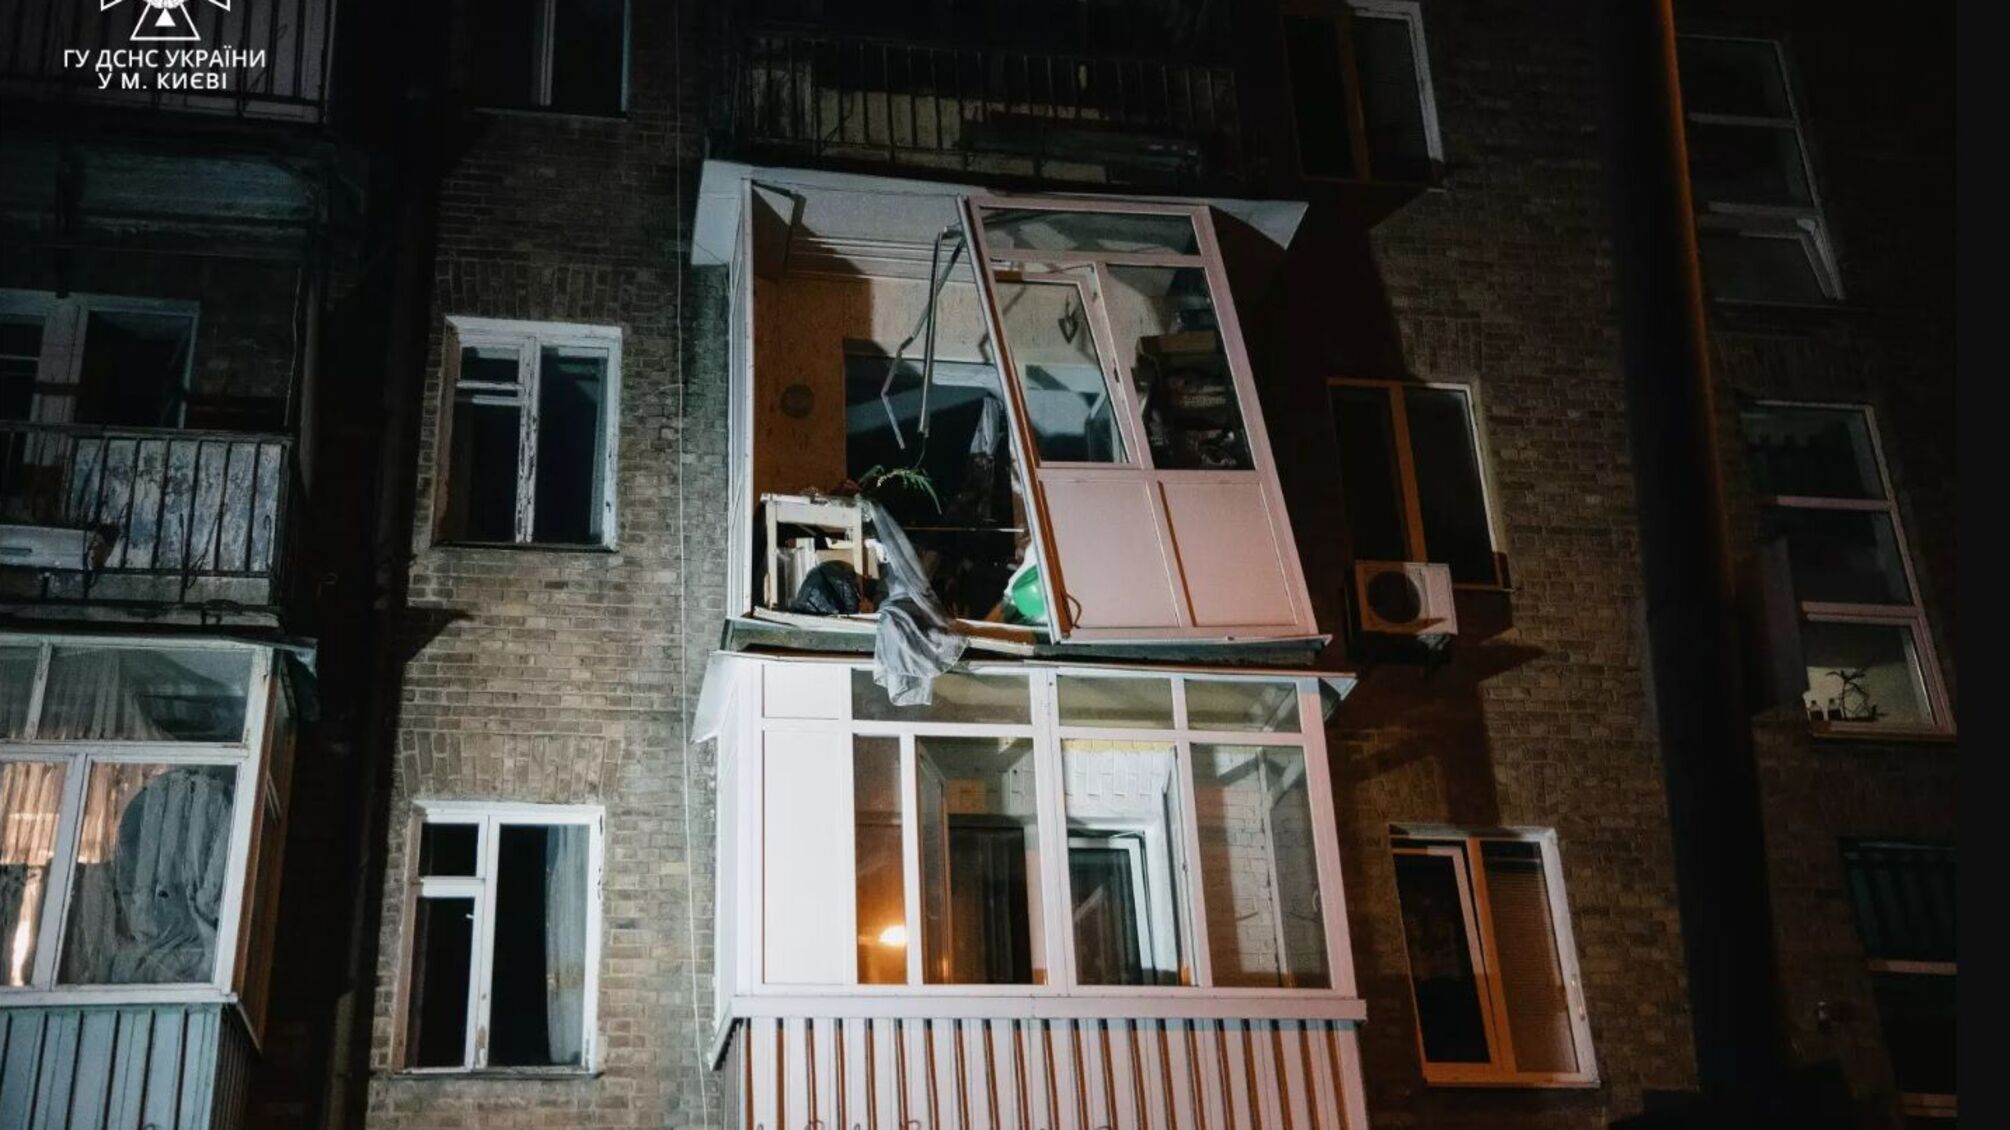 На момент вибуху в квартирі була родина з дітьми - постраждалих немає